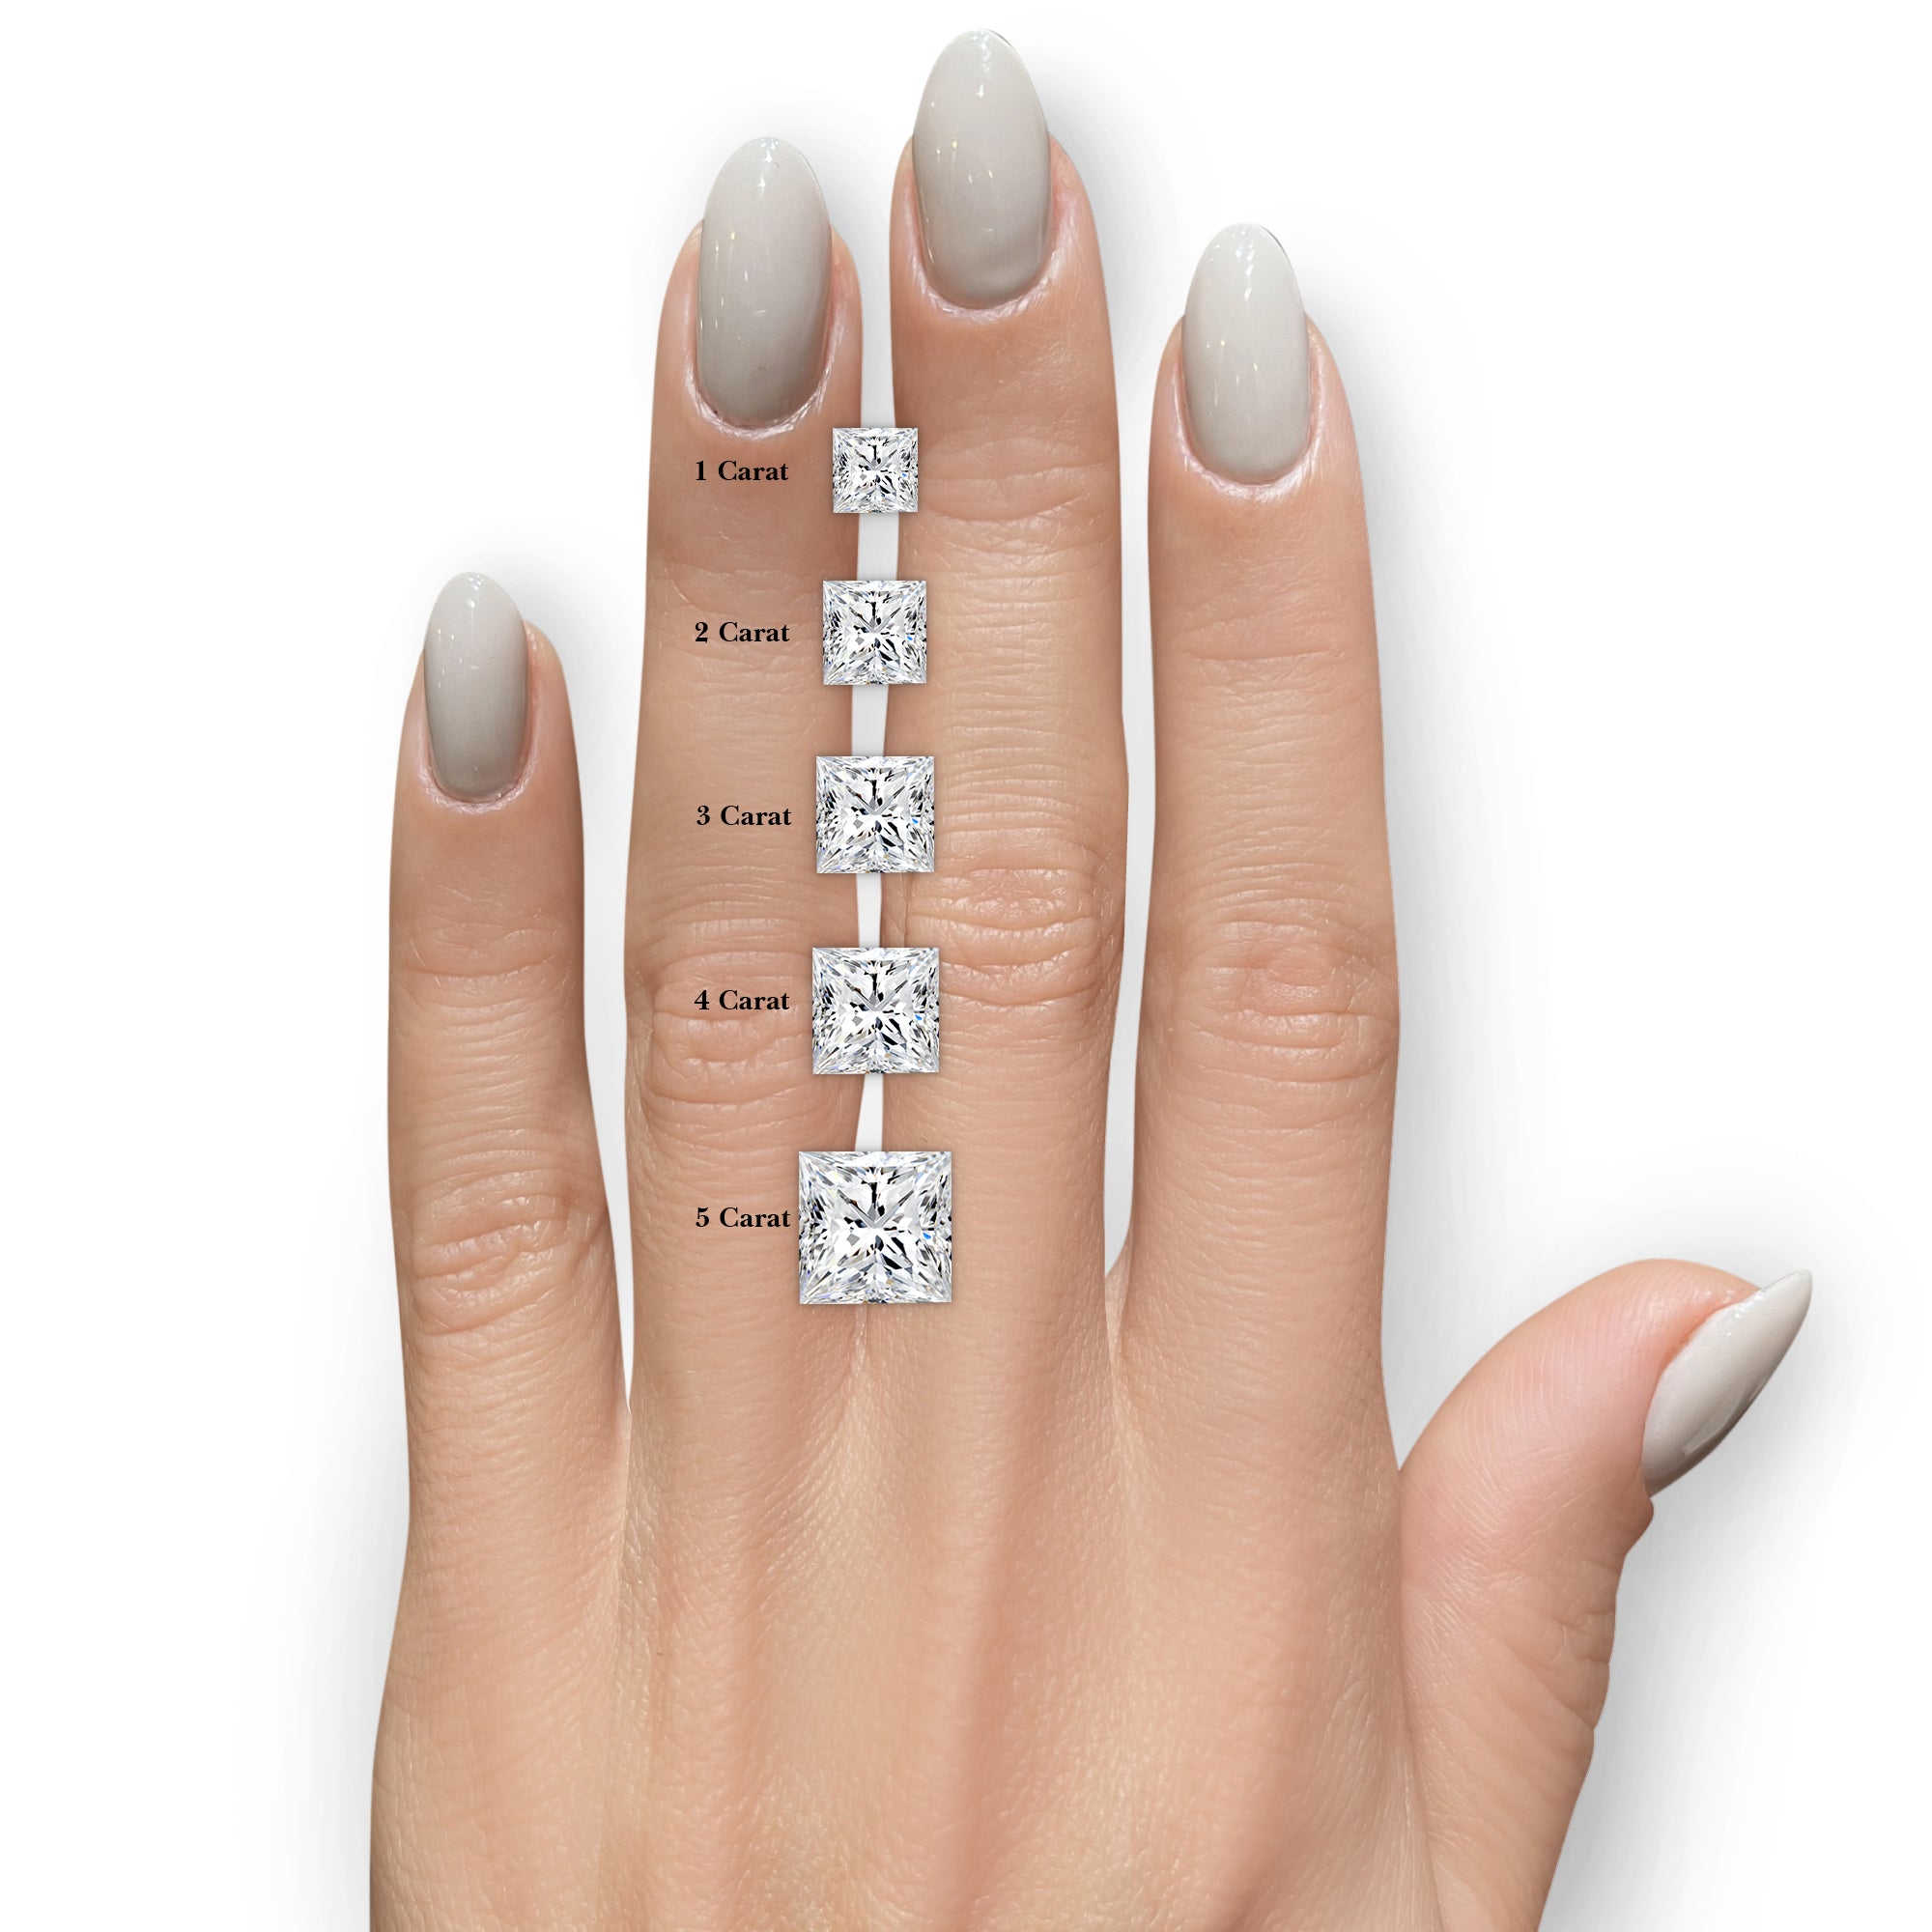 Celia Diamond Engagement Ring -Platinum